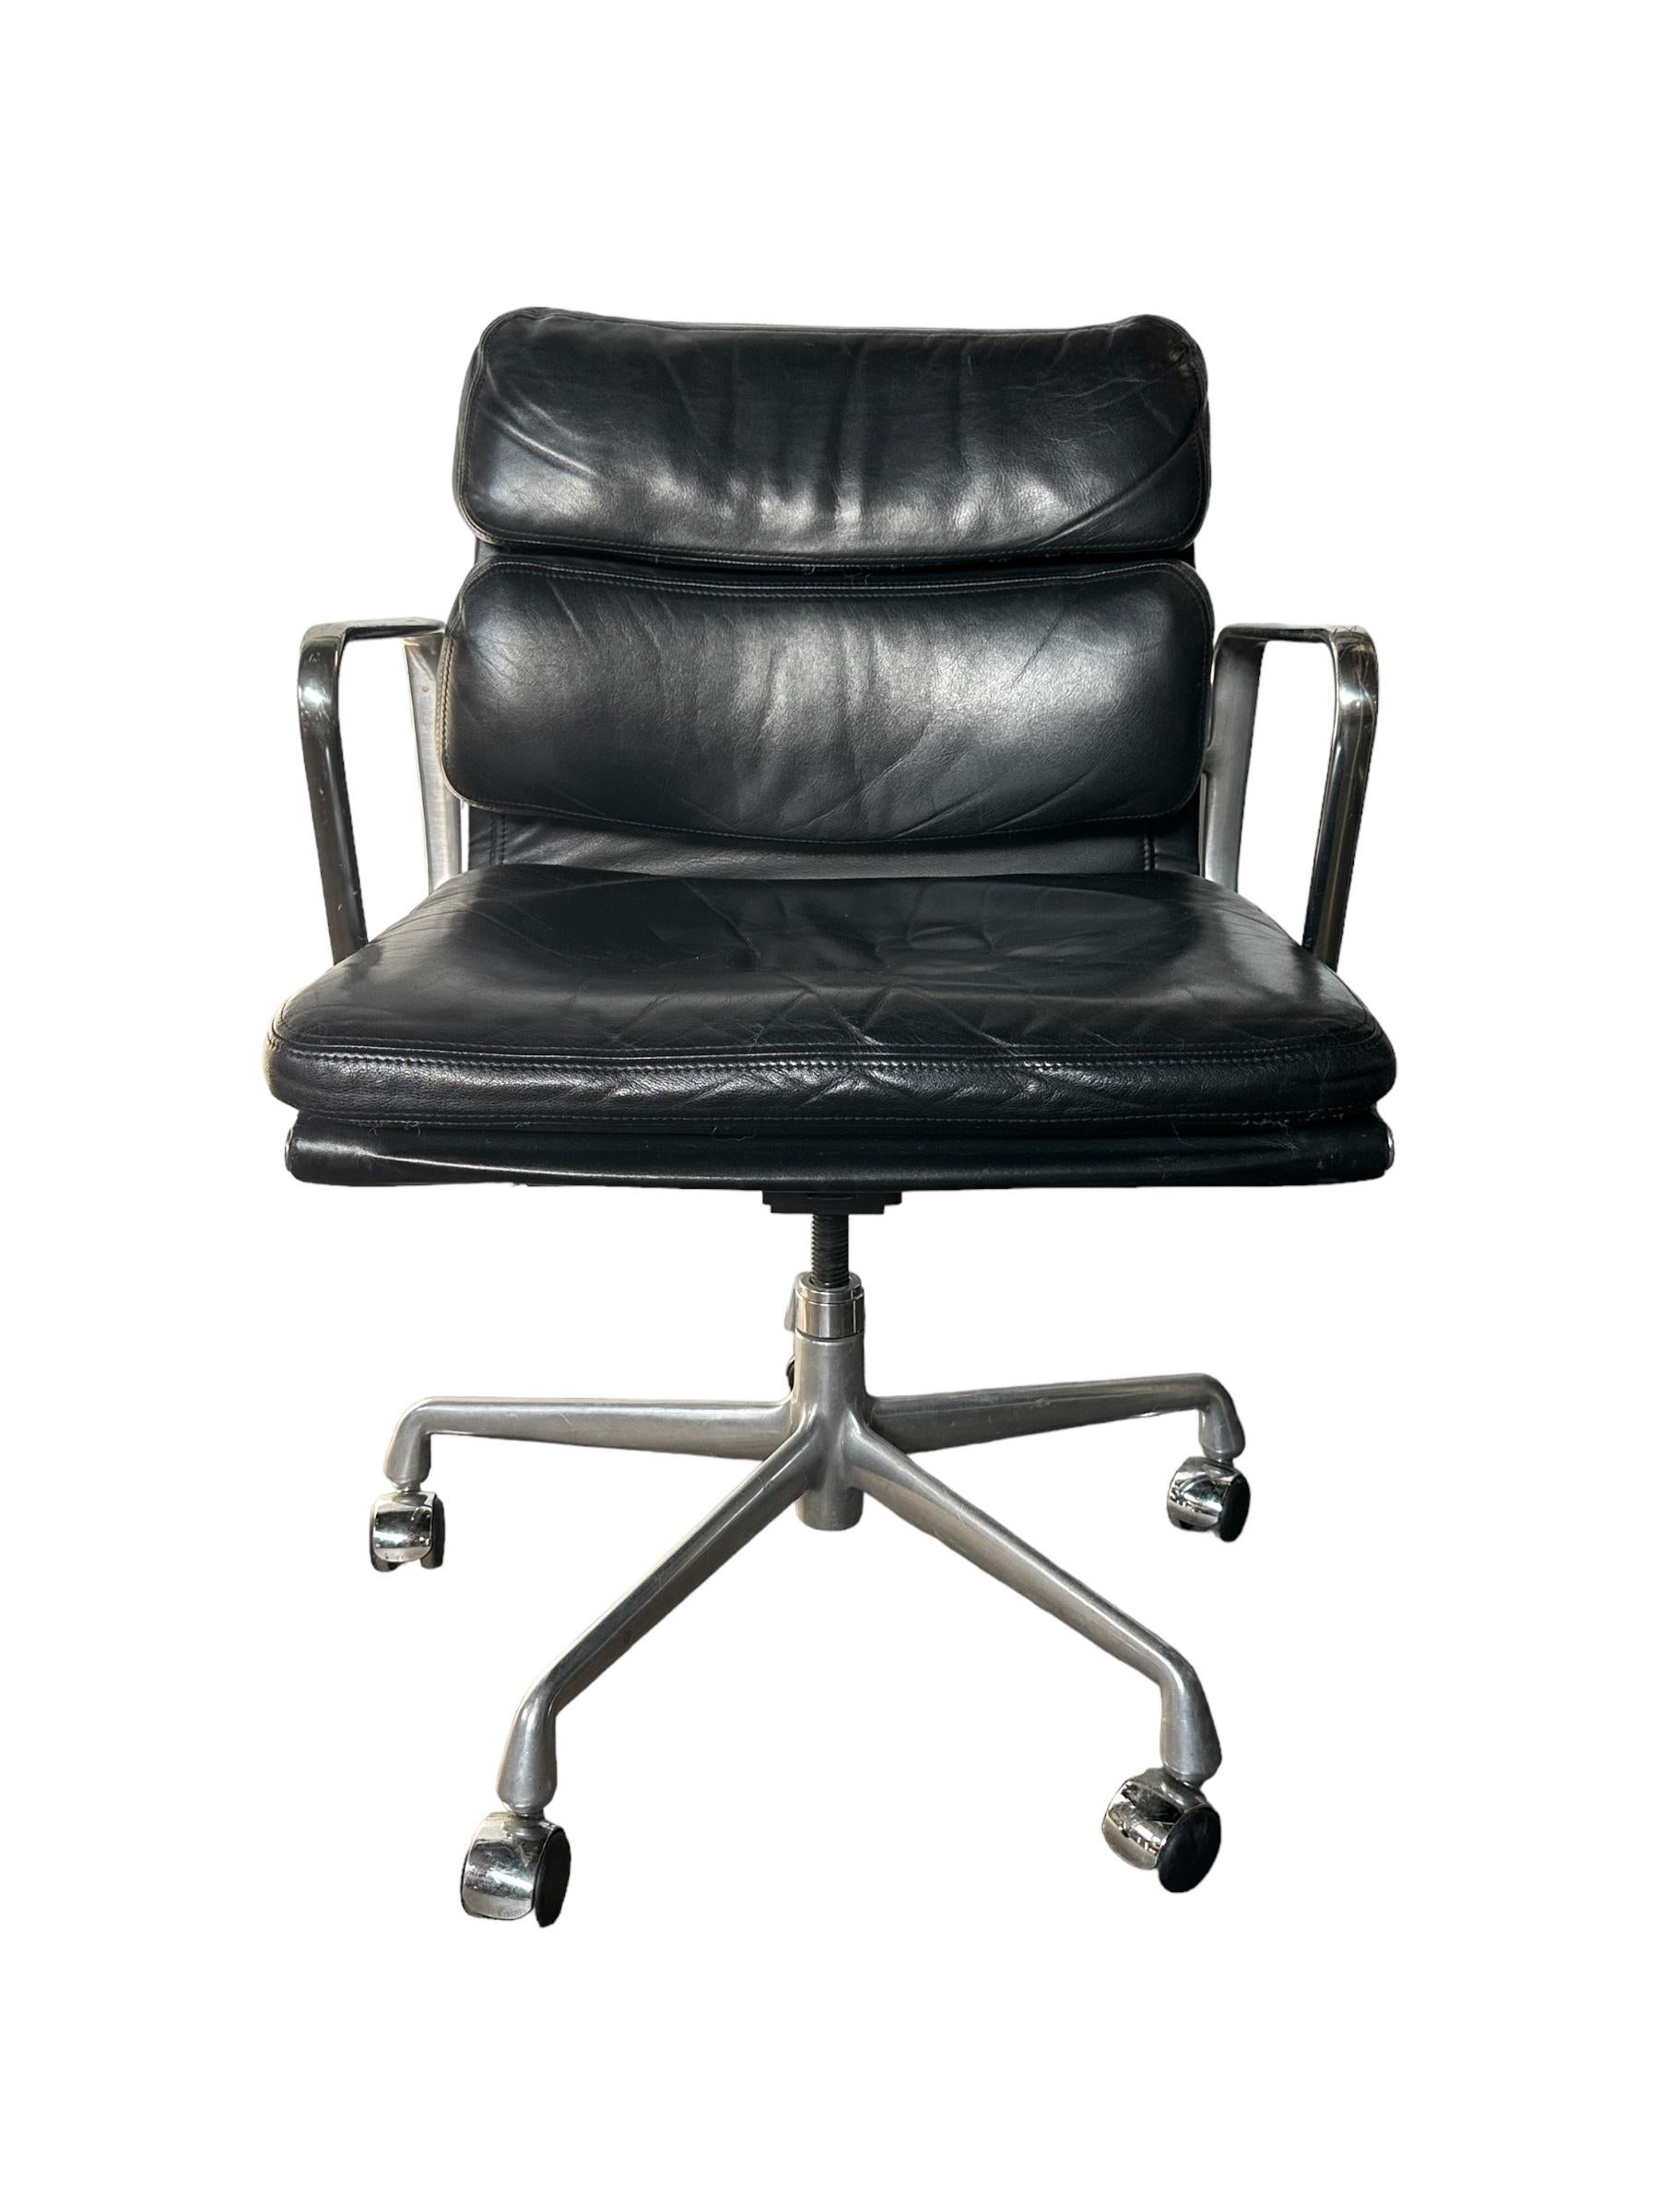 Belle et élégante chaise de bureau Eleg à coussin souple de la série Eames Aluminum Group de Herman Miller. La perfection du design understated classique de Charles et Ray Eames. Exécuté en cuir noir et en aluminium. Ce modèle dispose de tous les